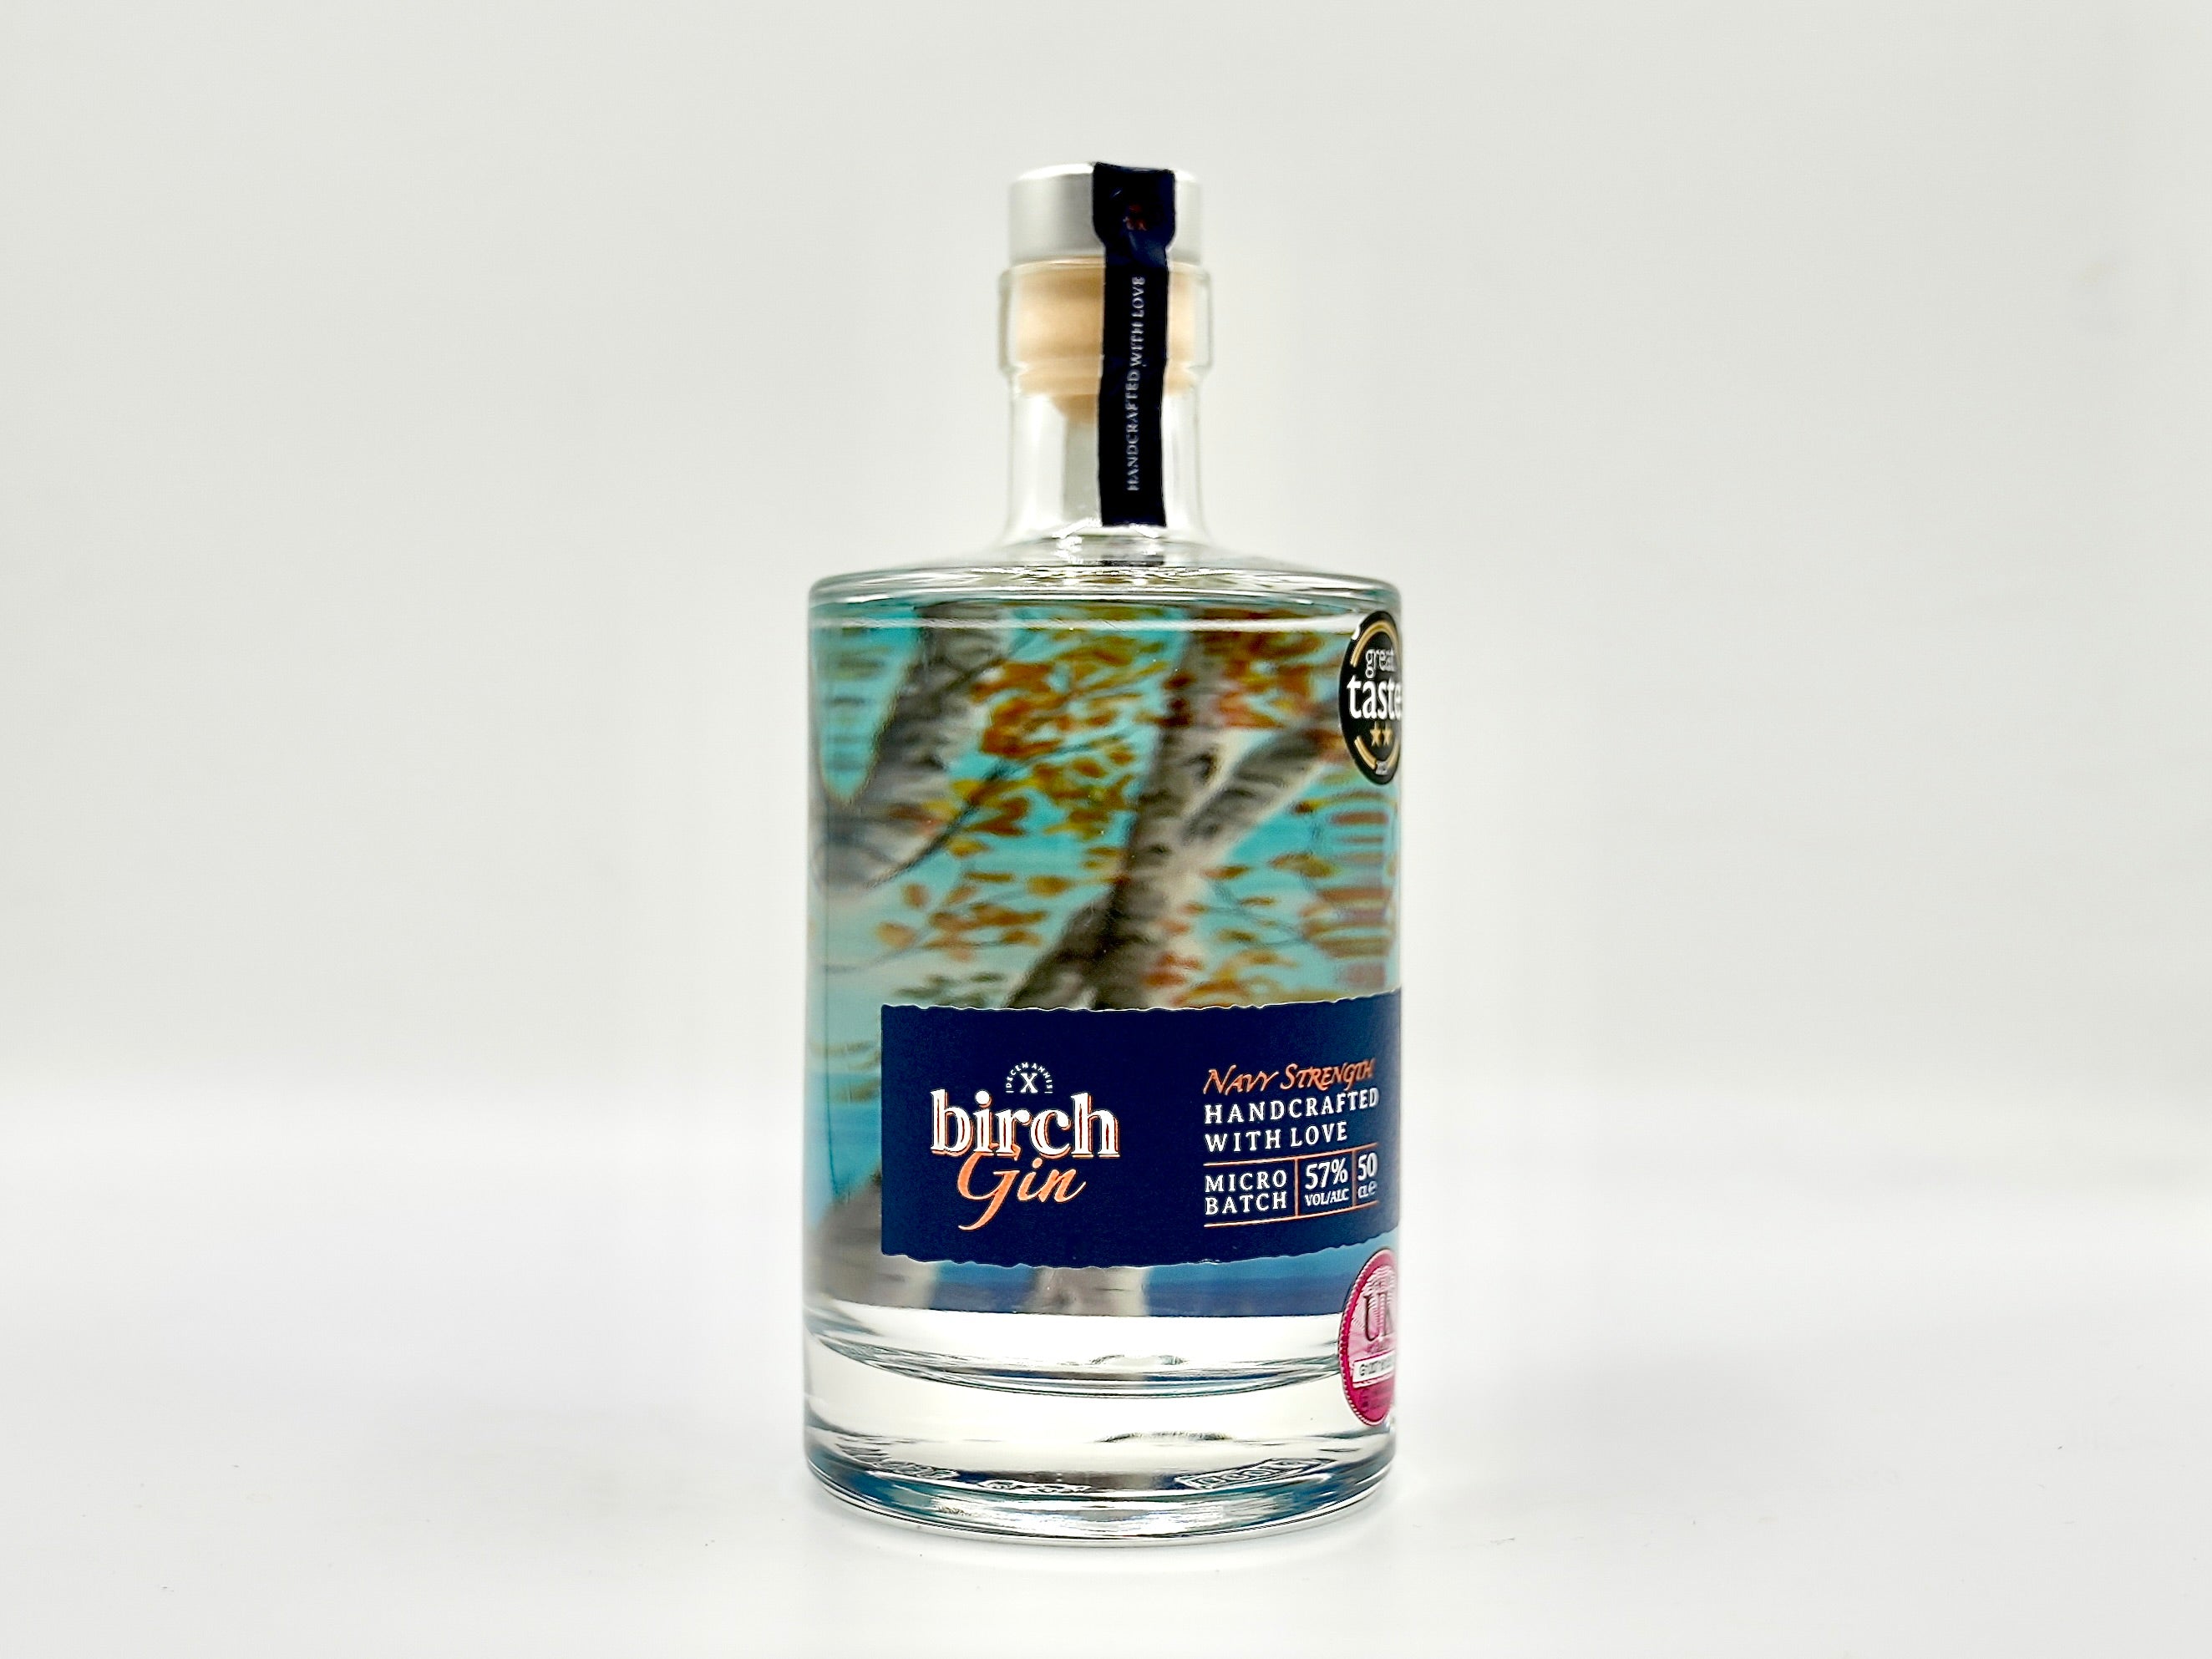 1 Bottle of Birch Gin Navy Strength